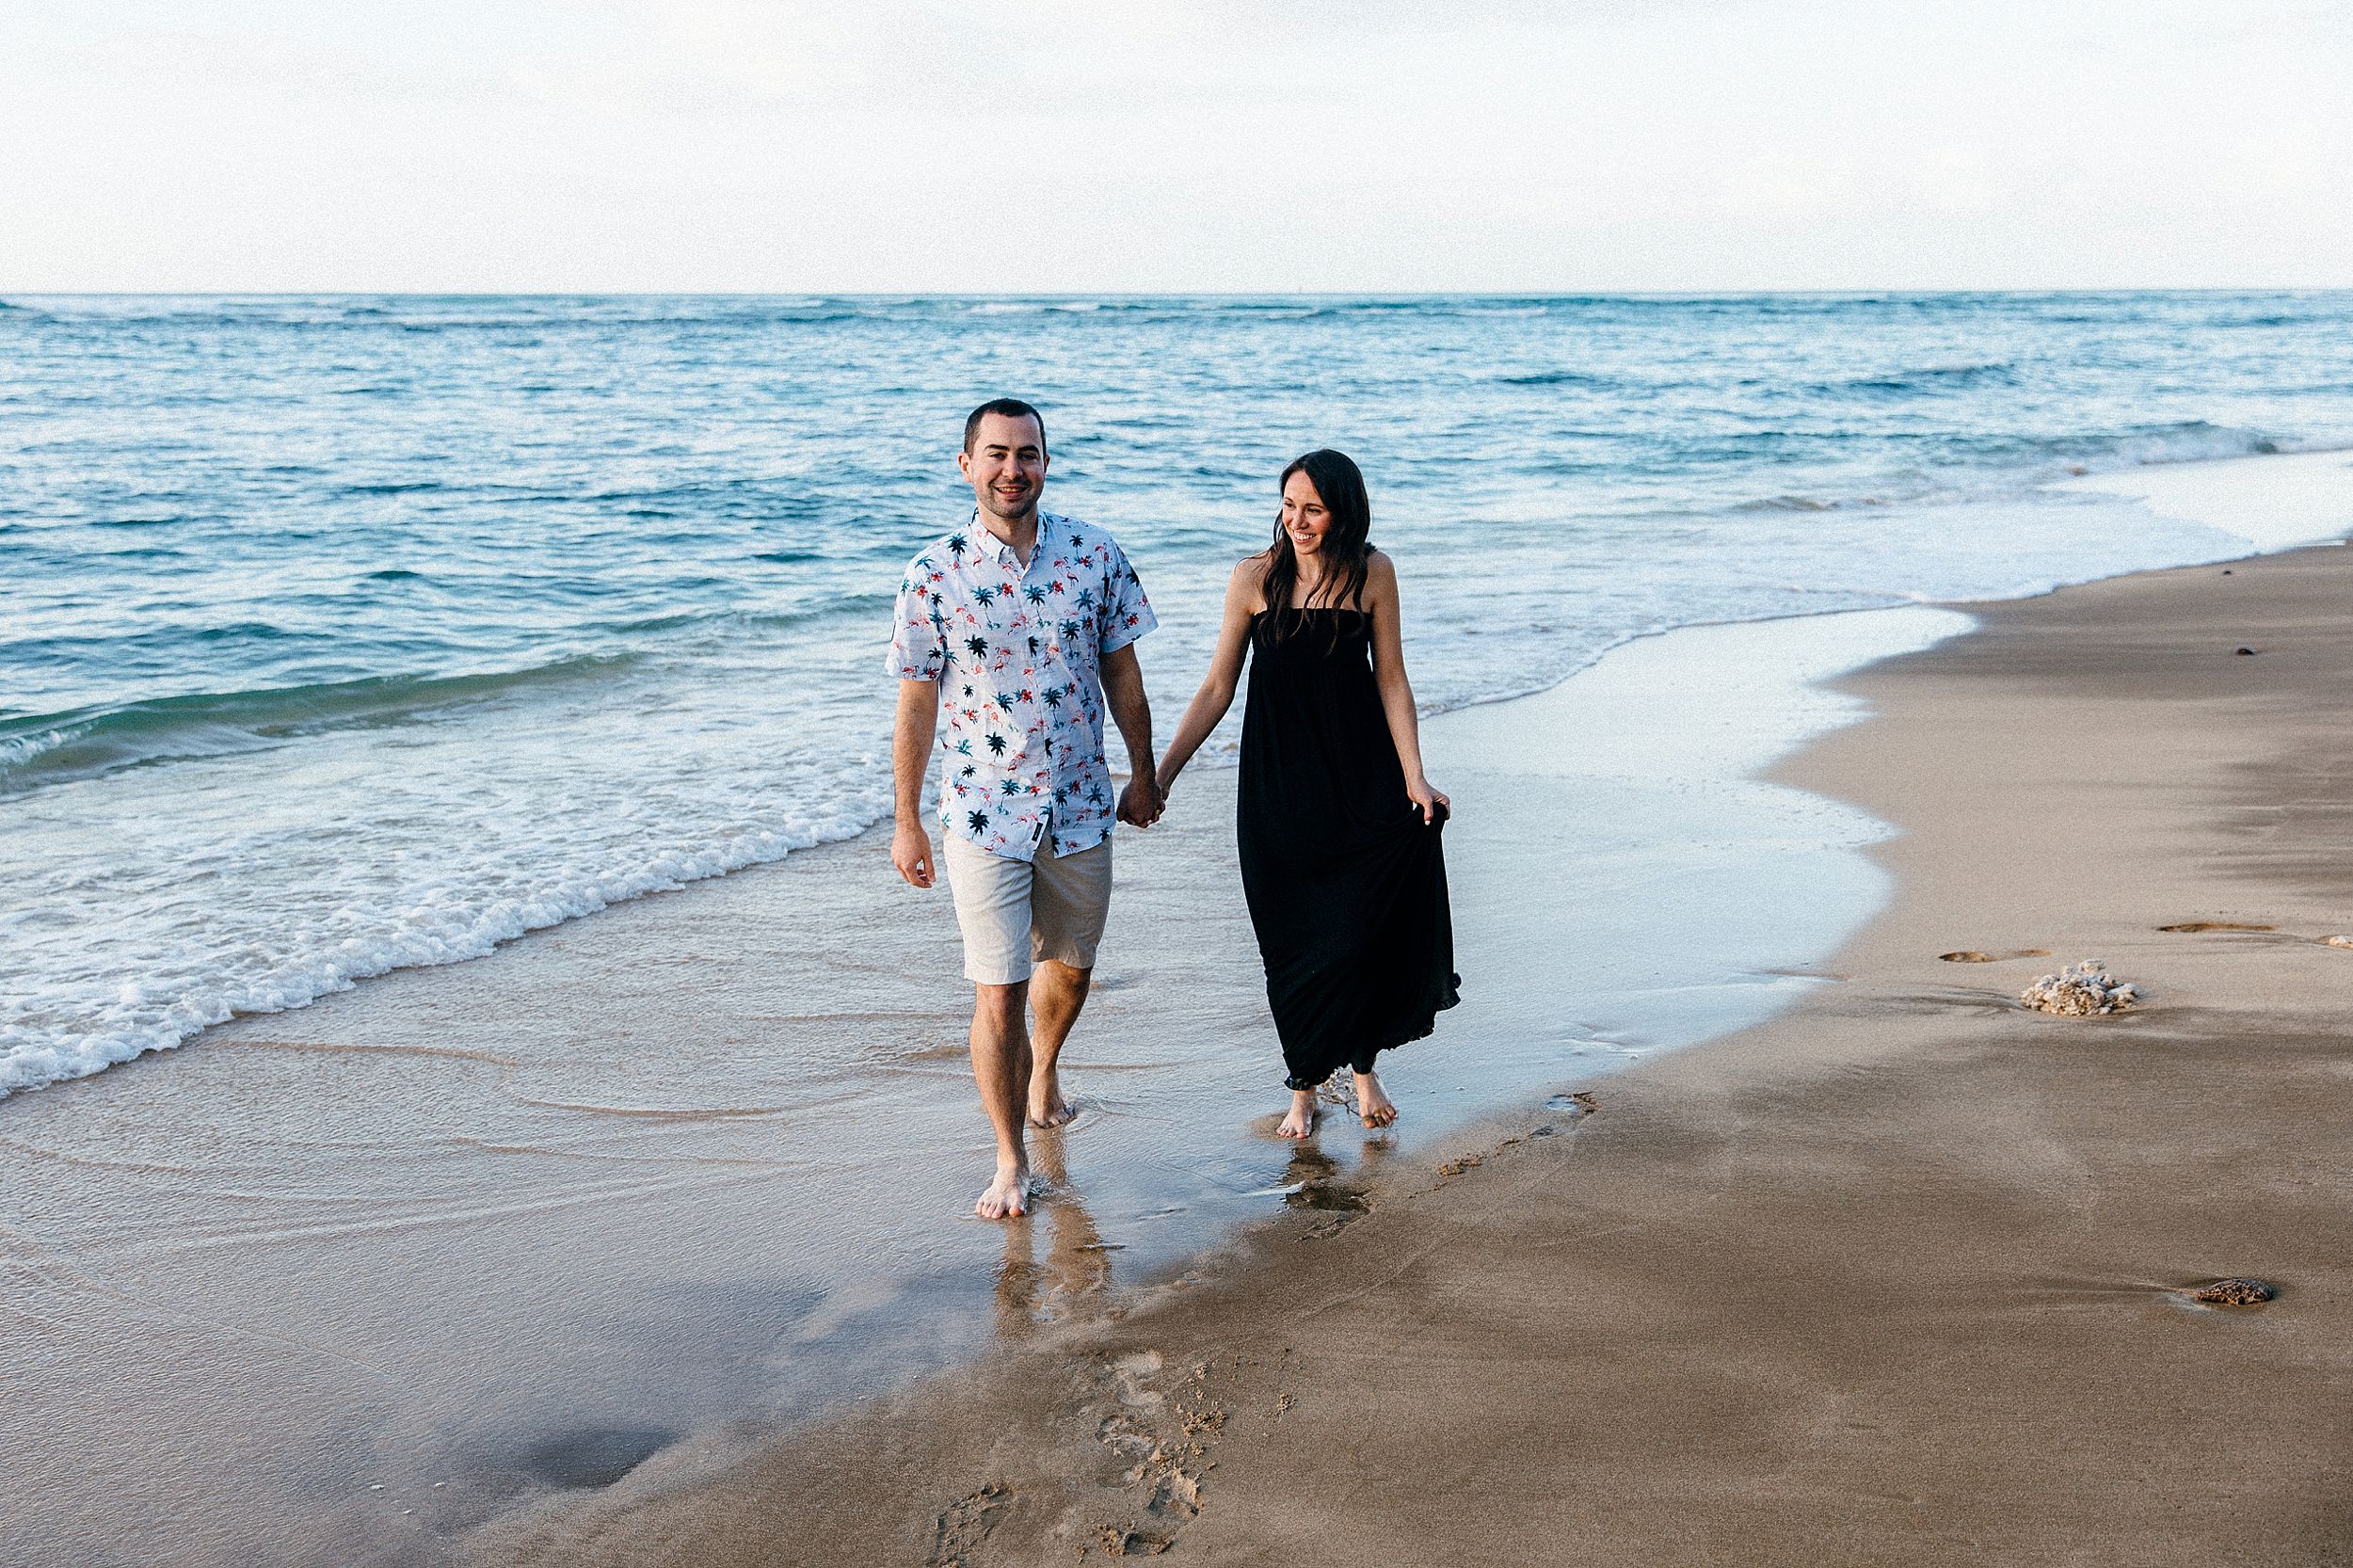 Honeymoon beach portraits in Hawaii